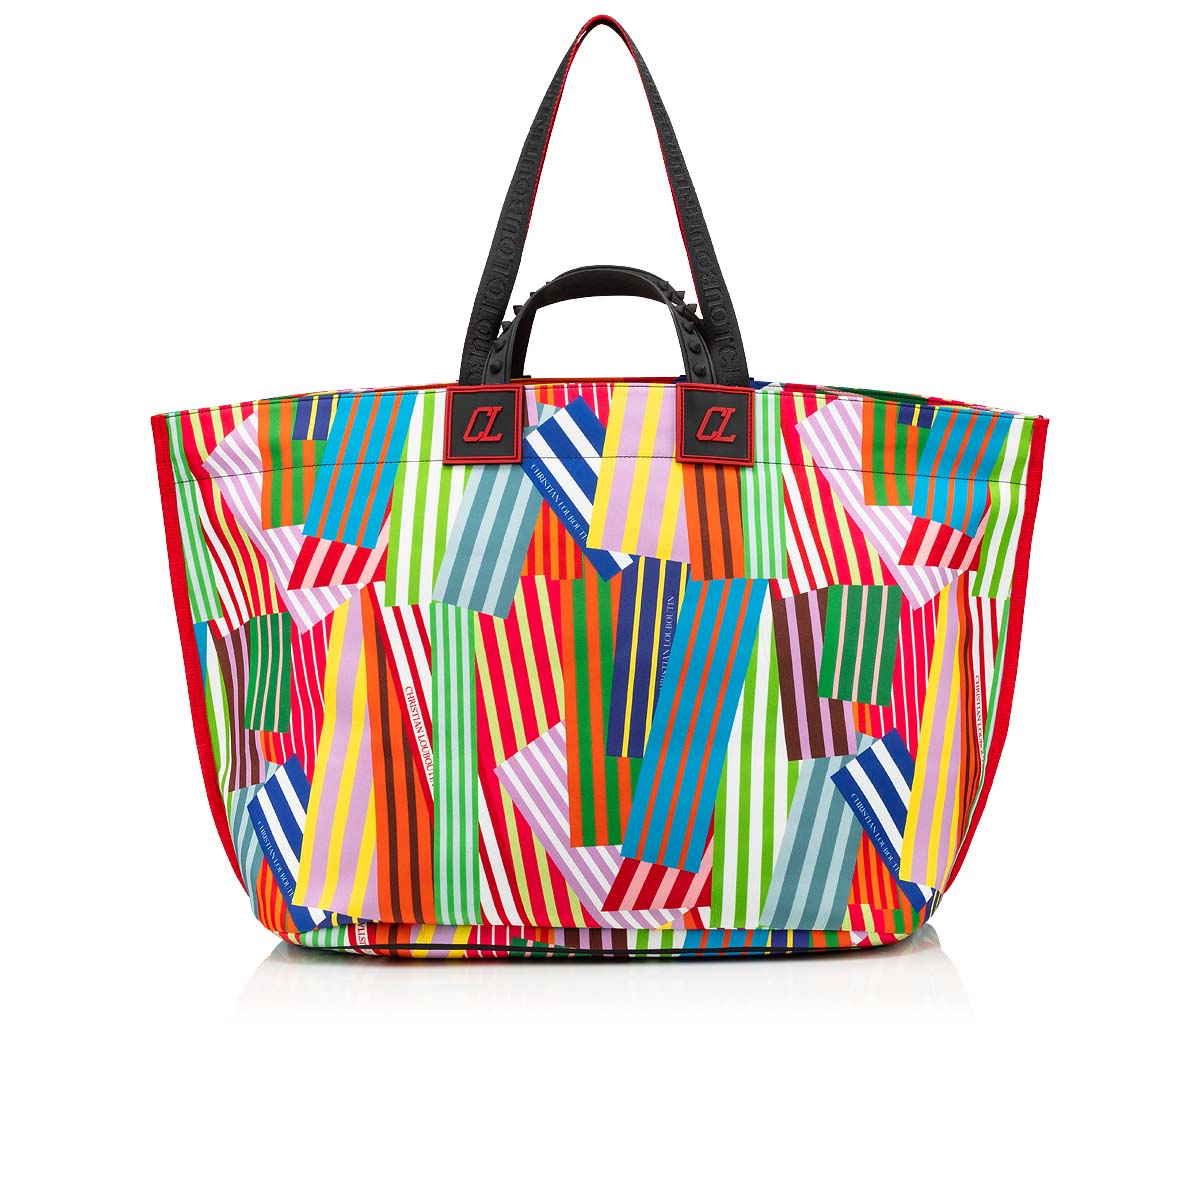 New Lady Shopping Handbag  Beach Travel Tote Shoulder Bag SA 